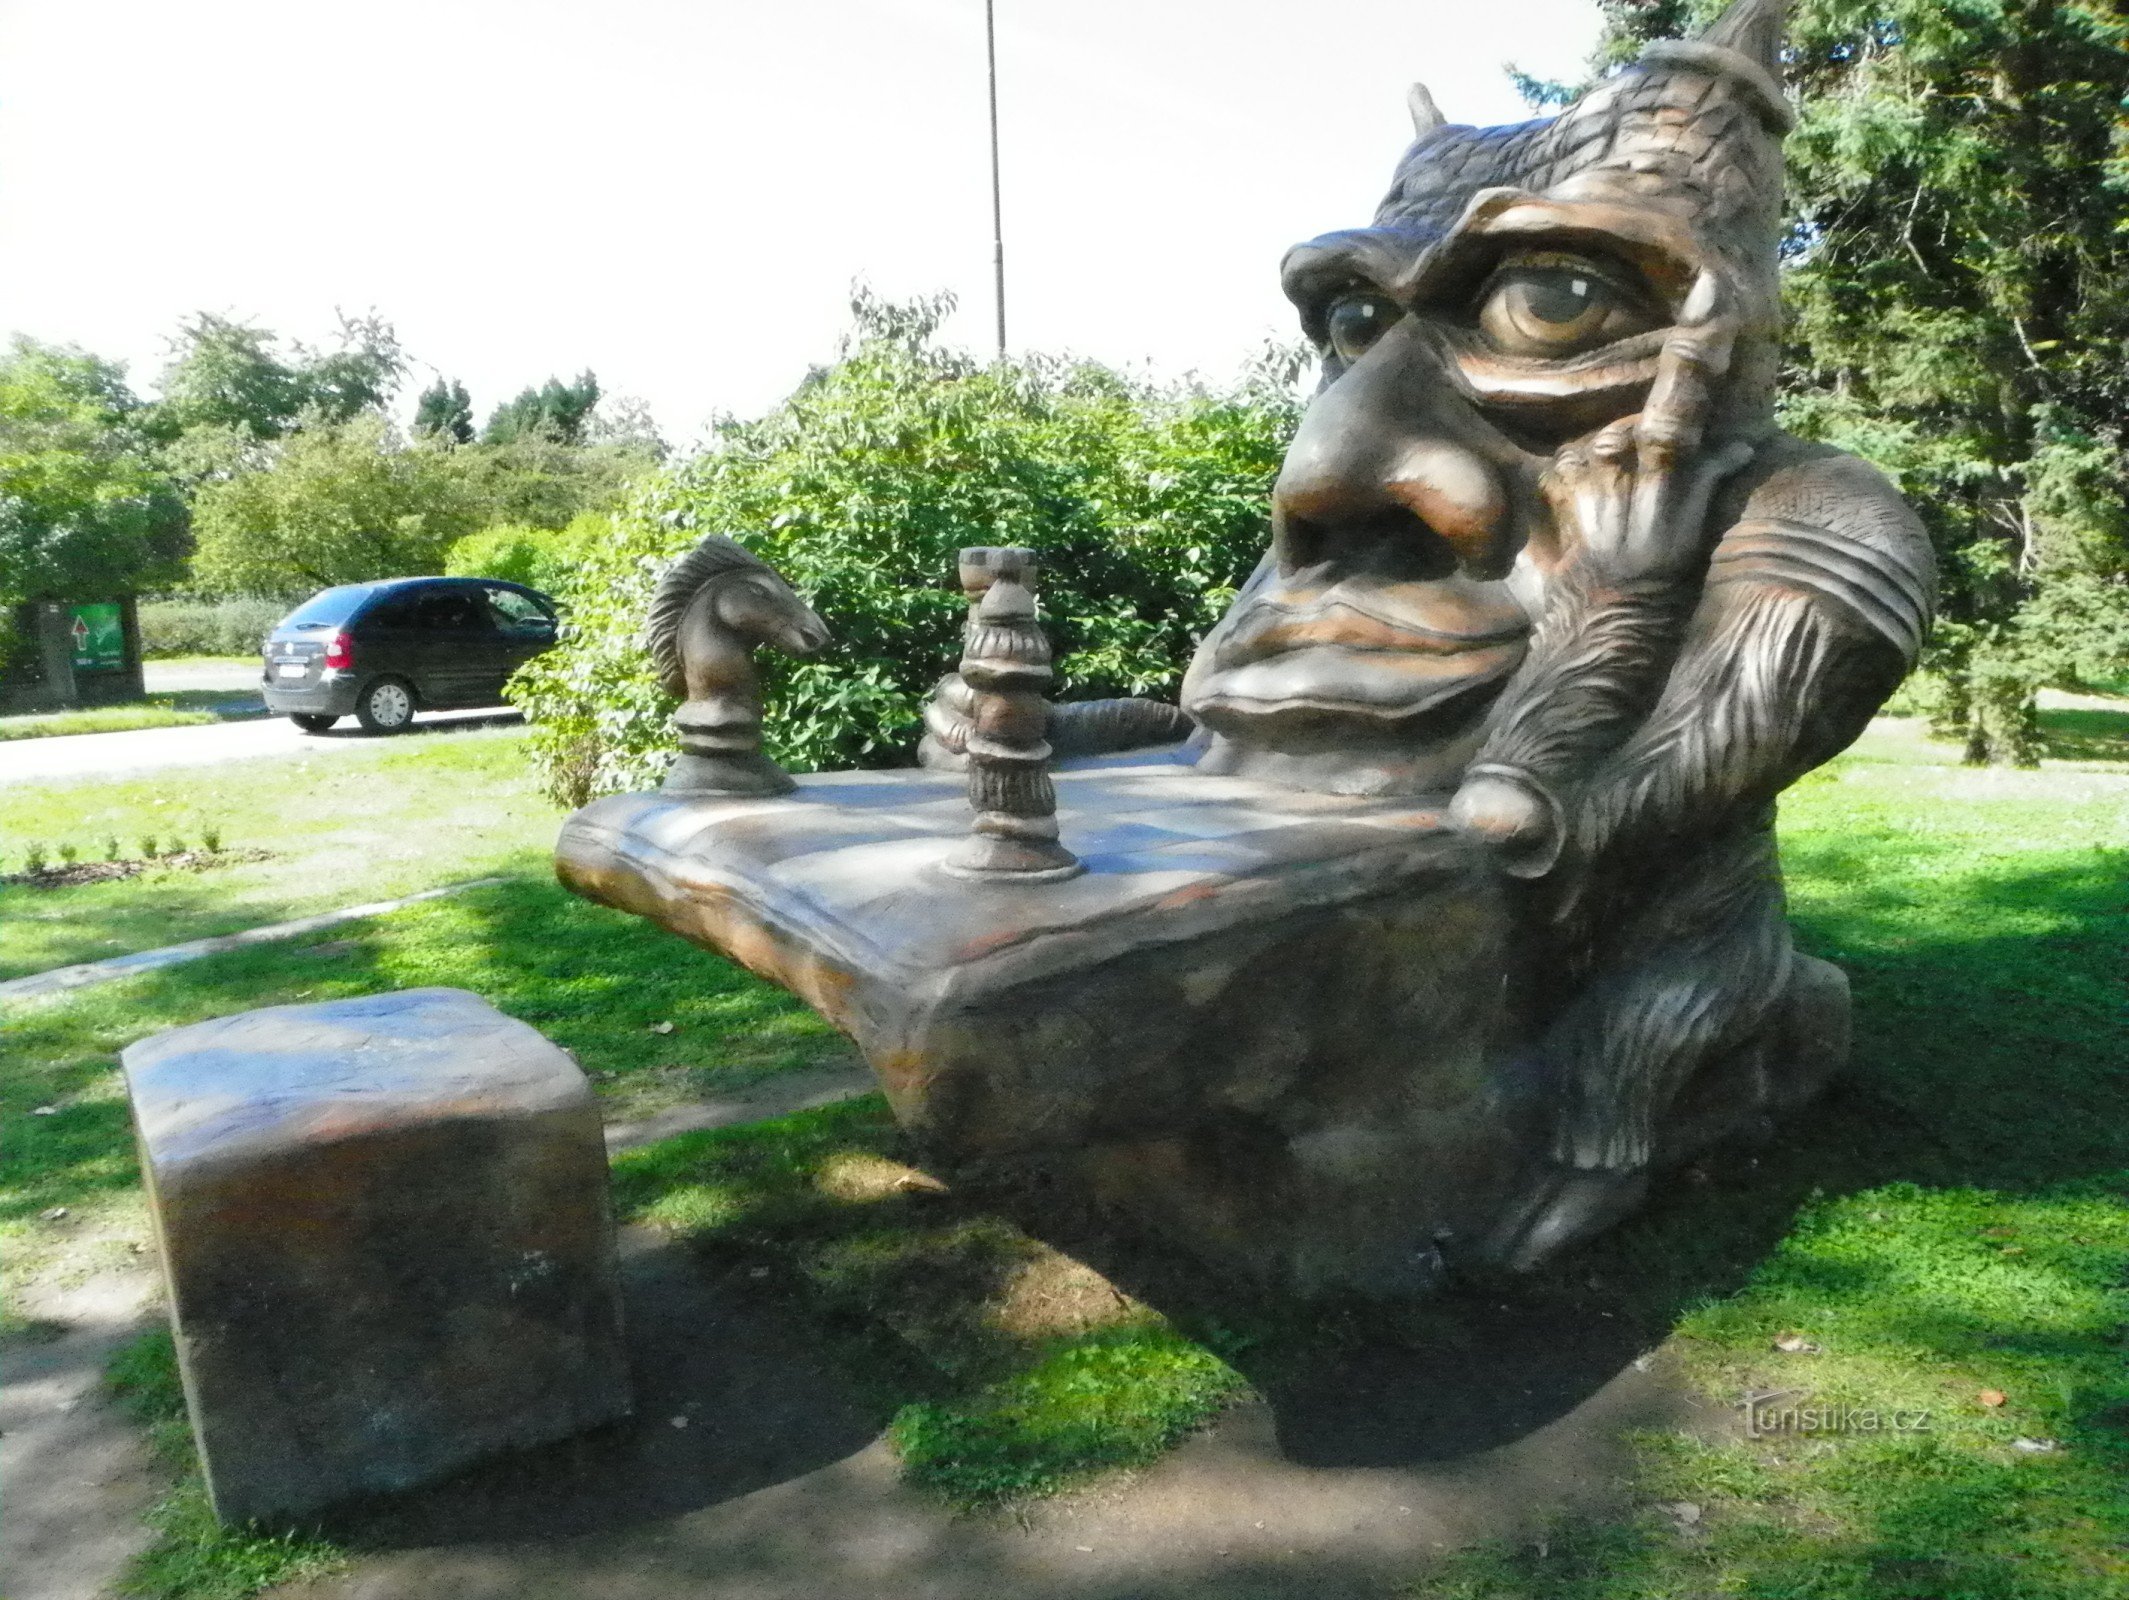 Devil's table - sculpture by Olšiak